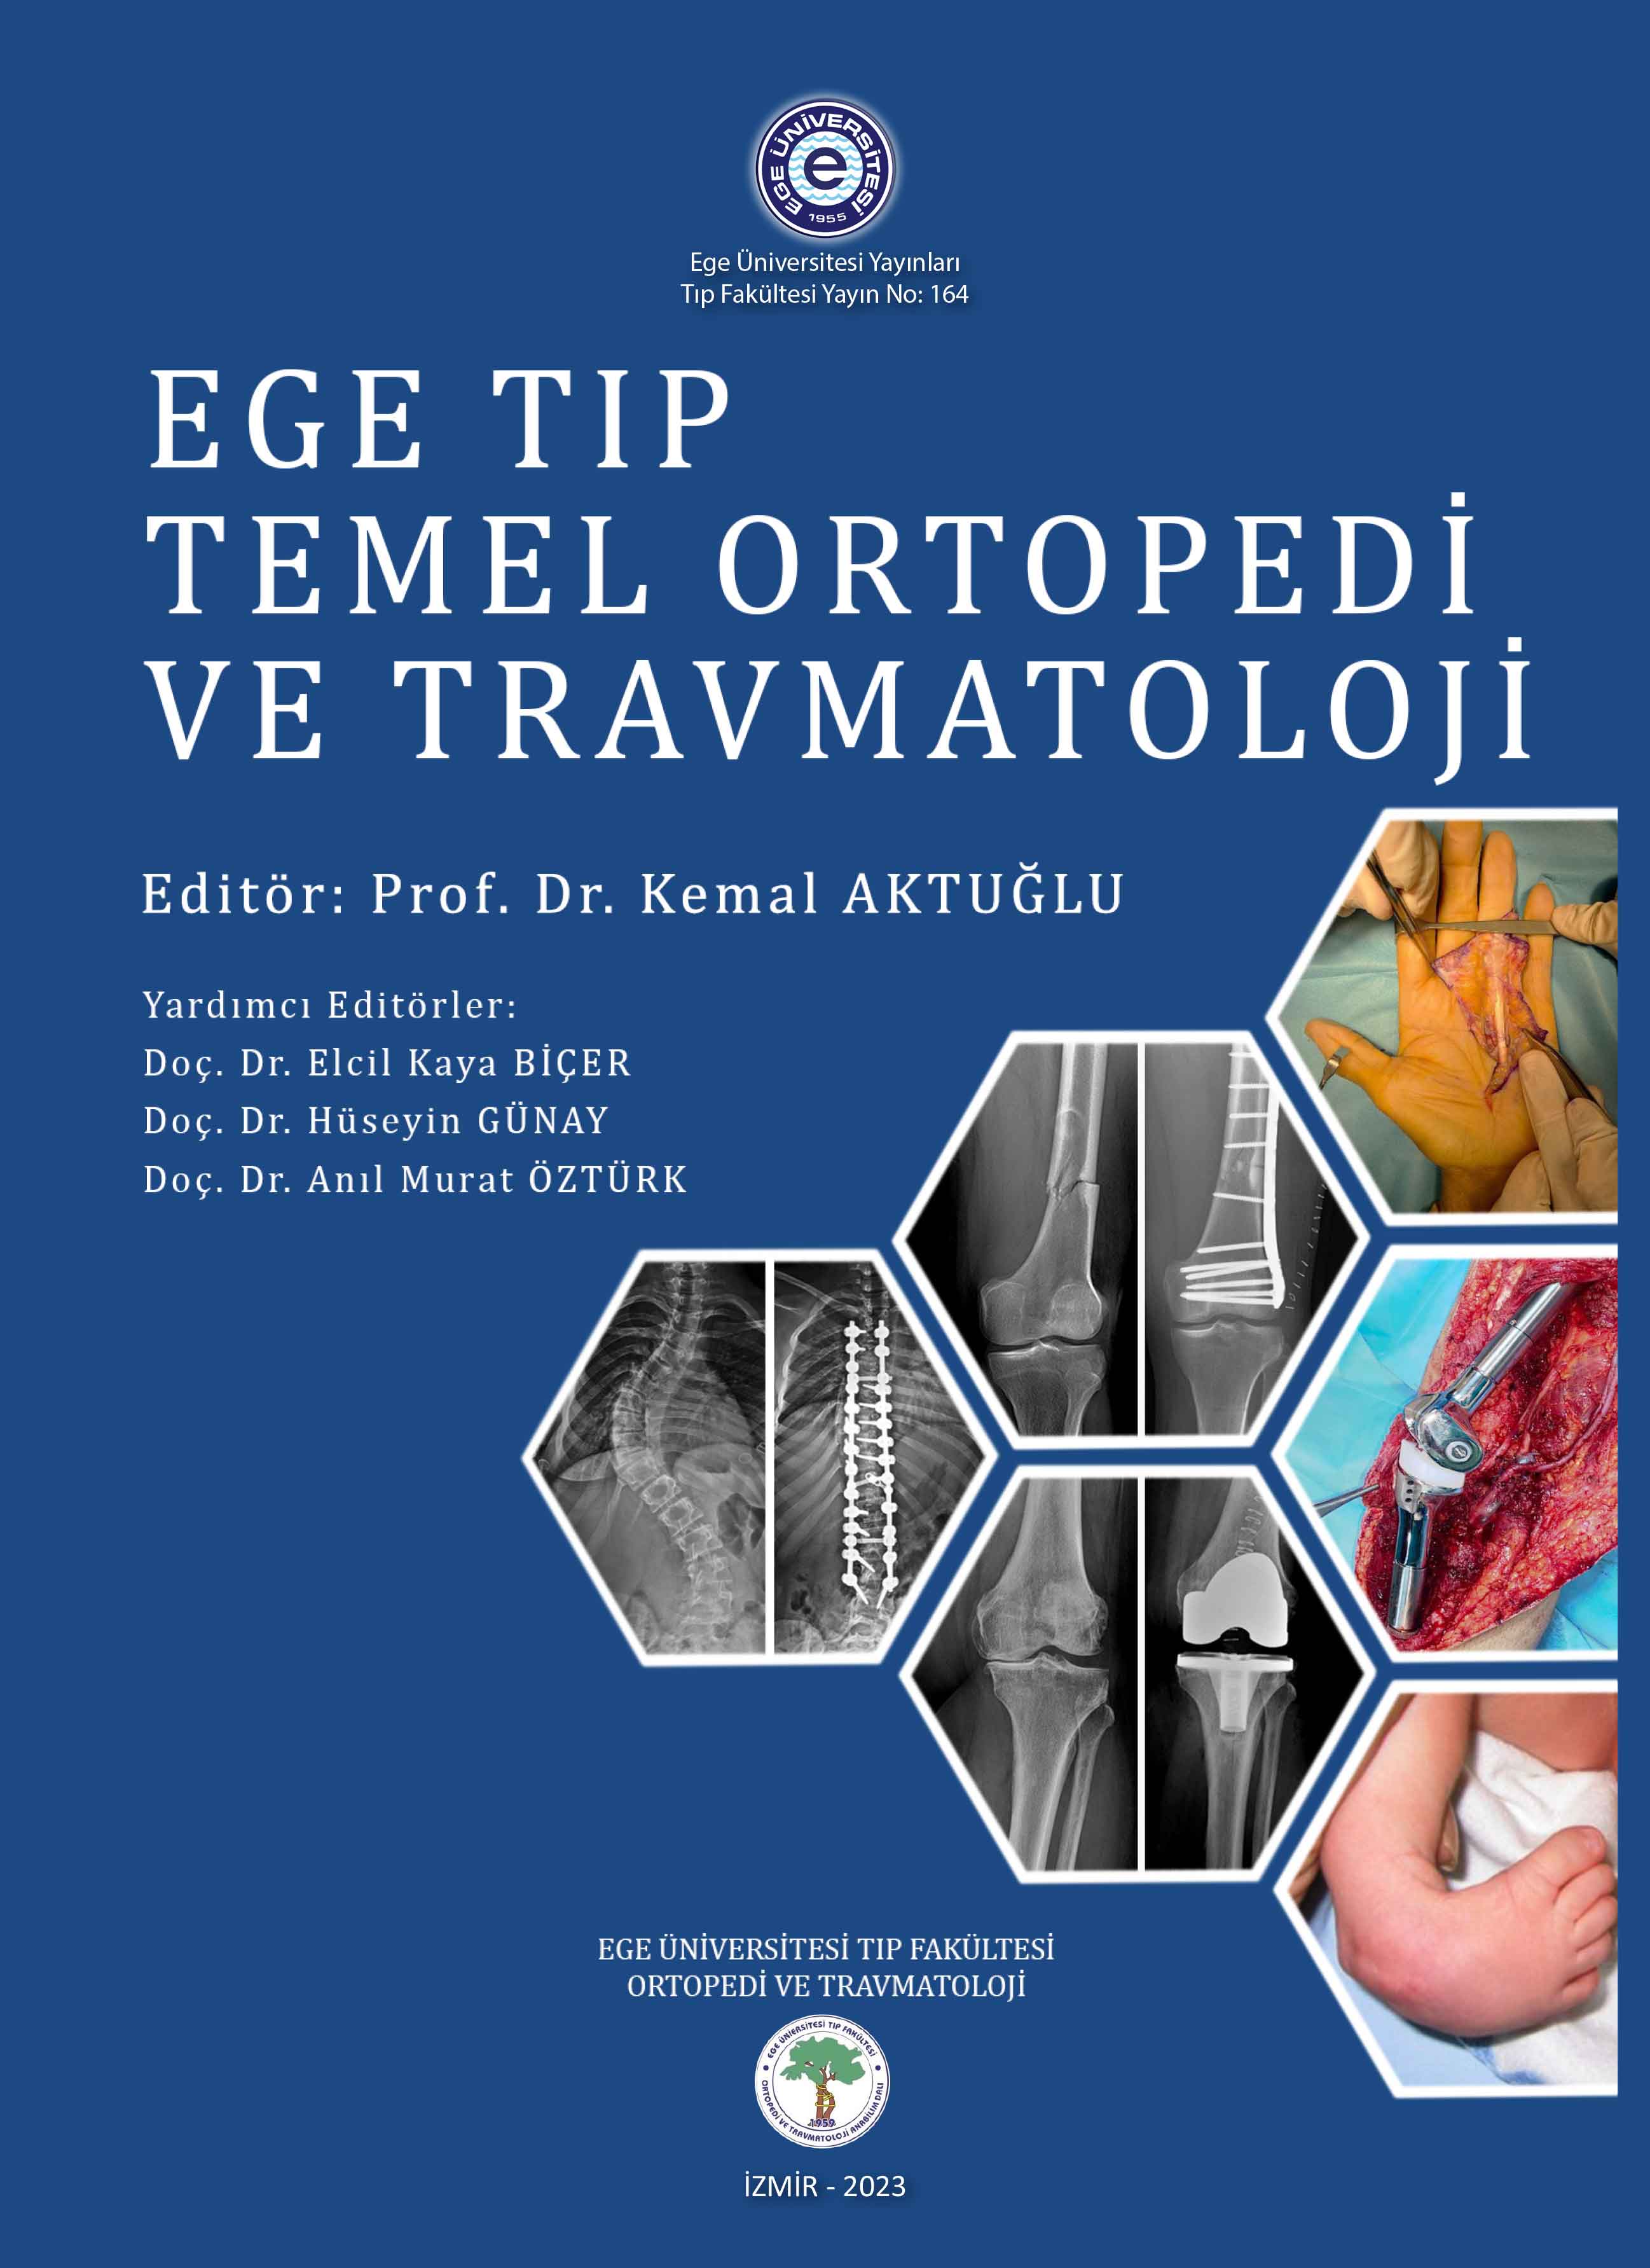 Ege Tıp Temel Ortopedi ve Travmatoloji 